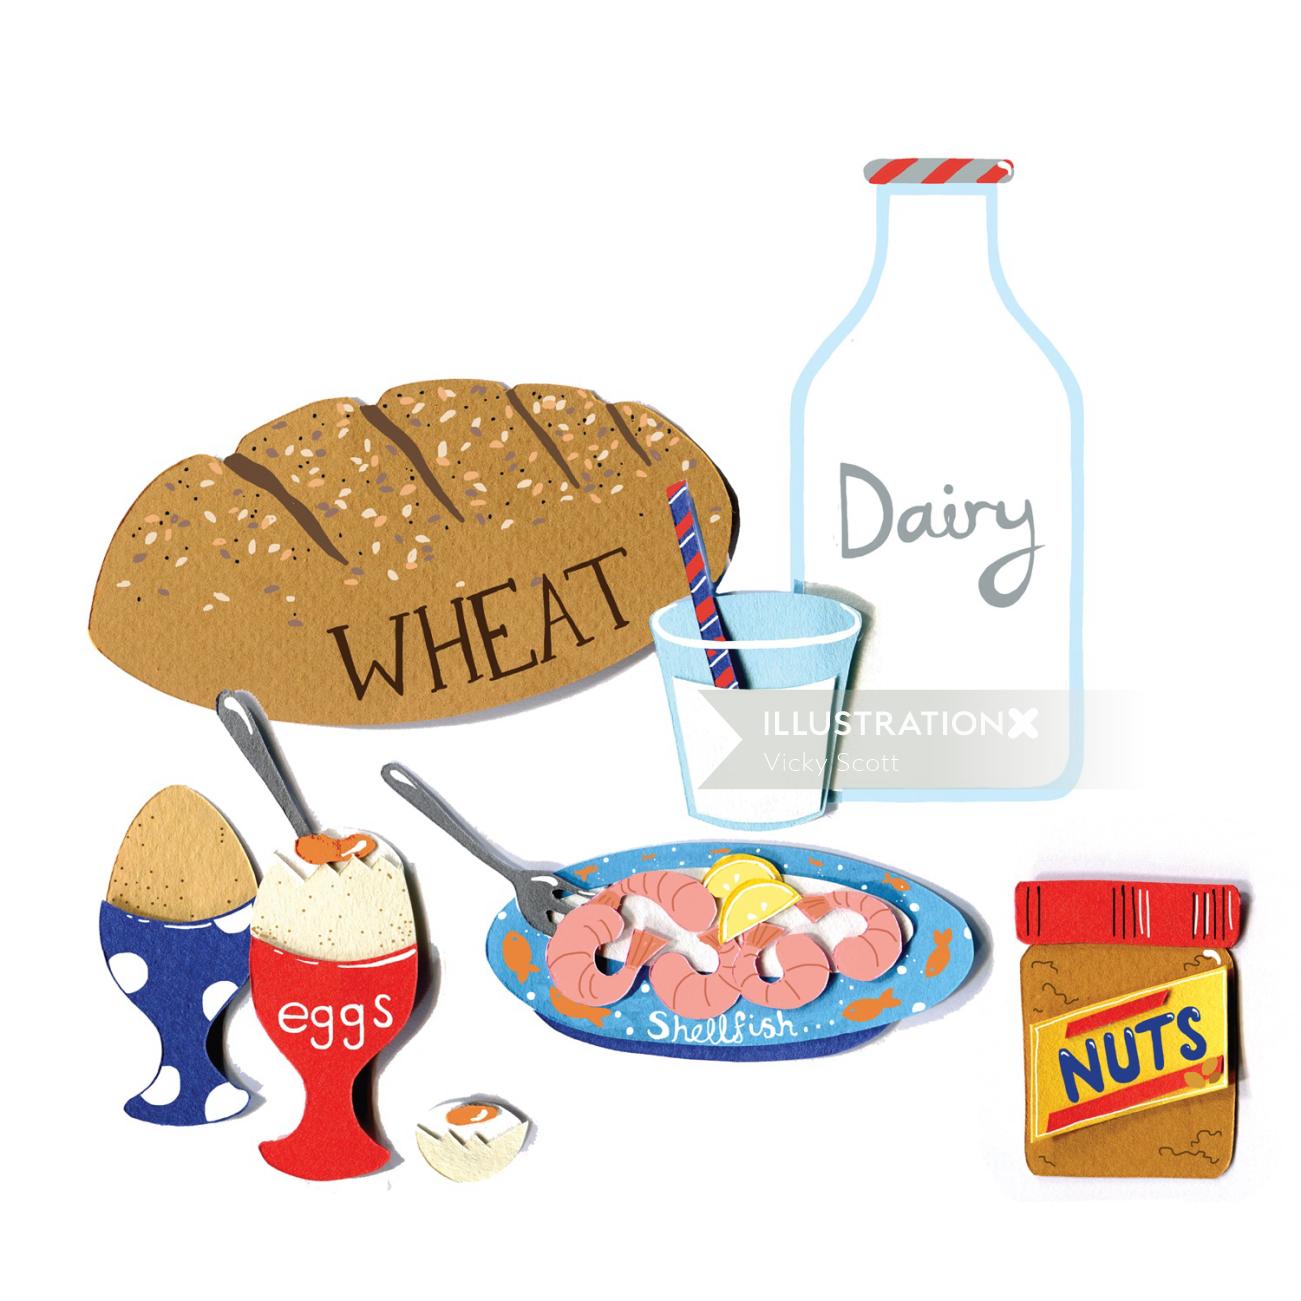 alimentos, laticínios, amendoim, marisco, ovos, leite, trigo, pão, alergias, alergia, leite, manteiga de amendoim